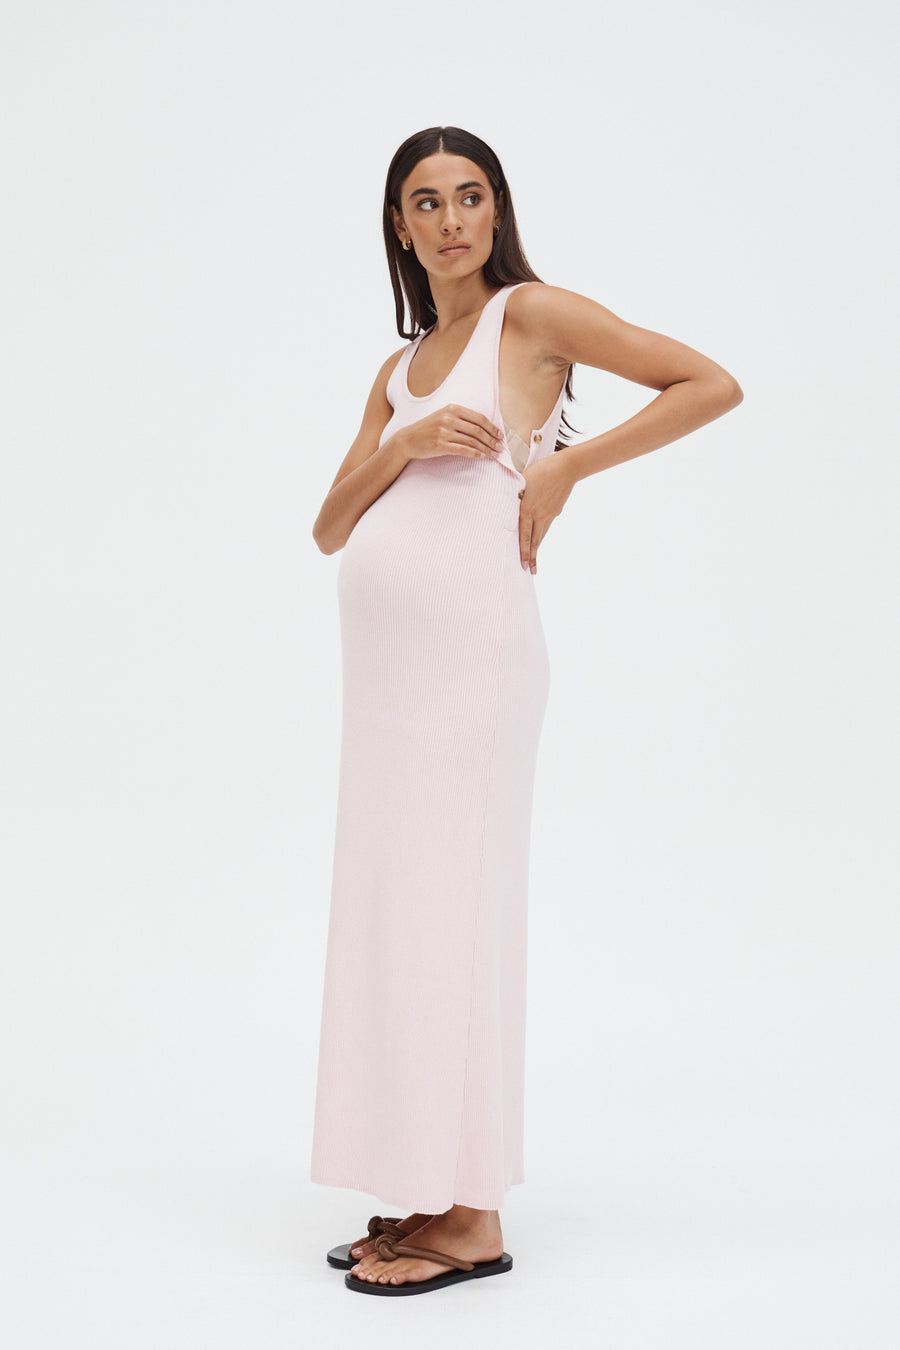 Stylish Baby Shower Dress (Rose) 5